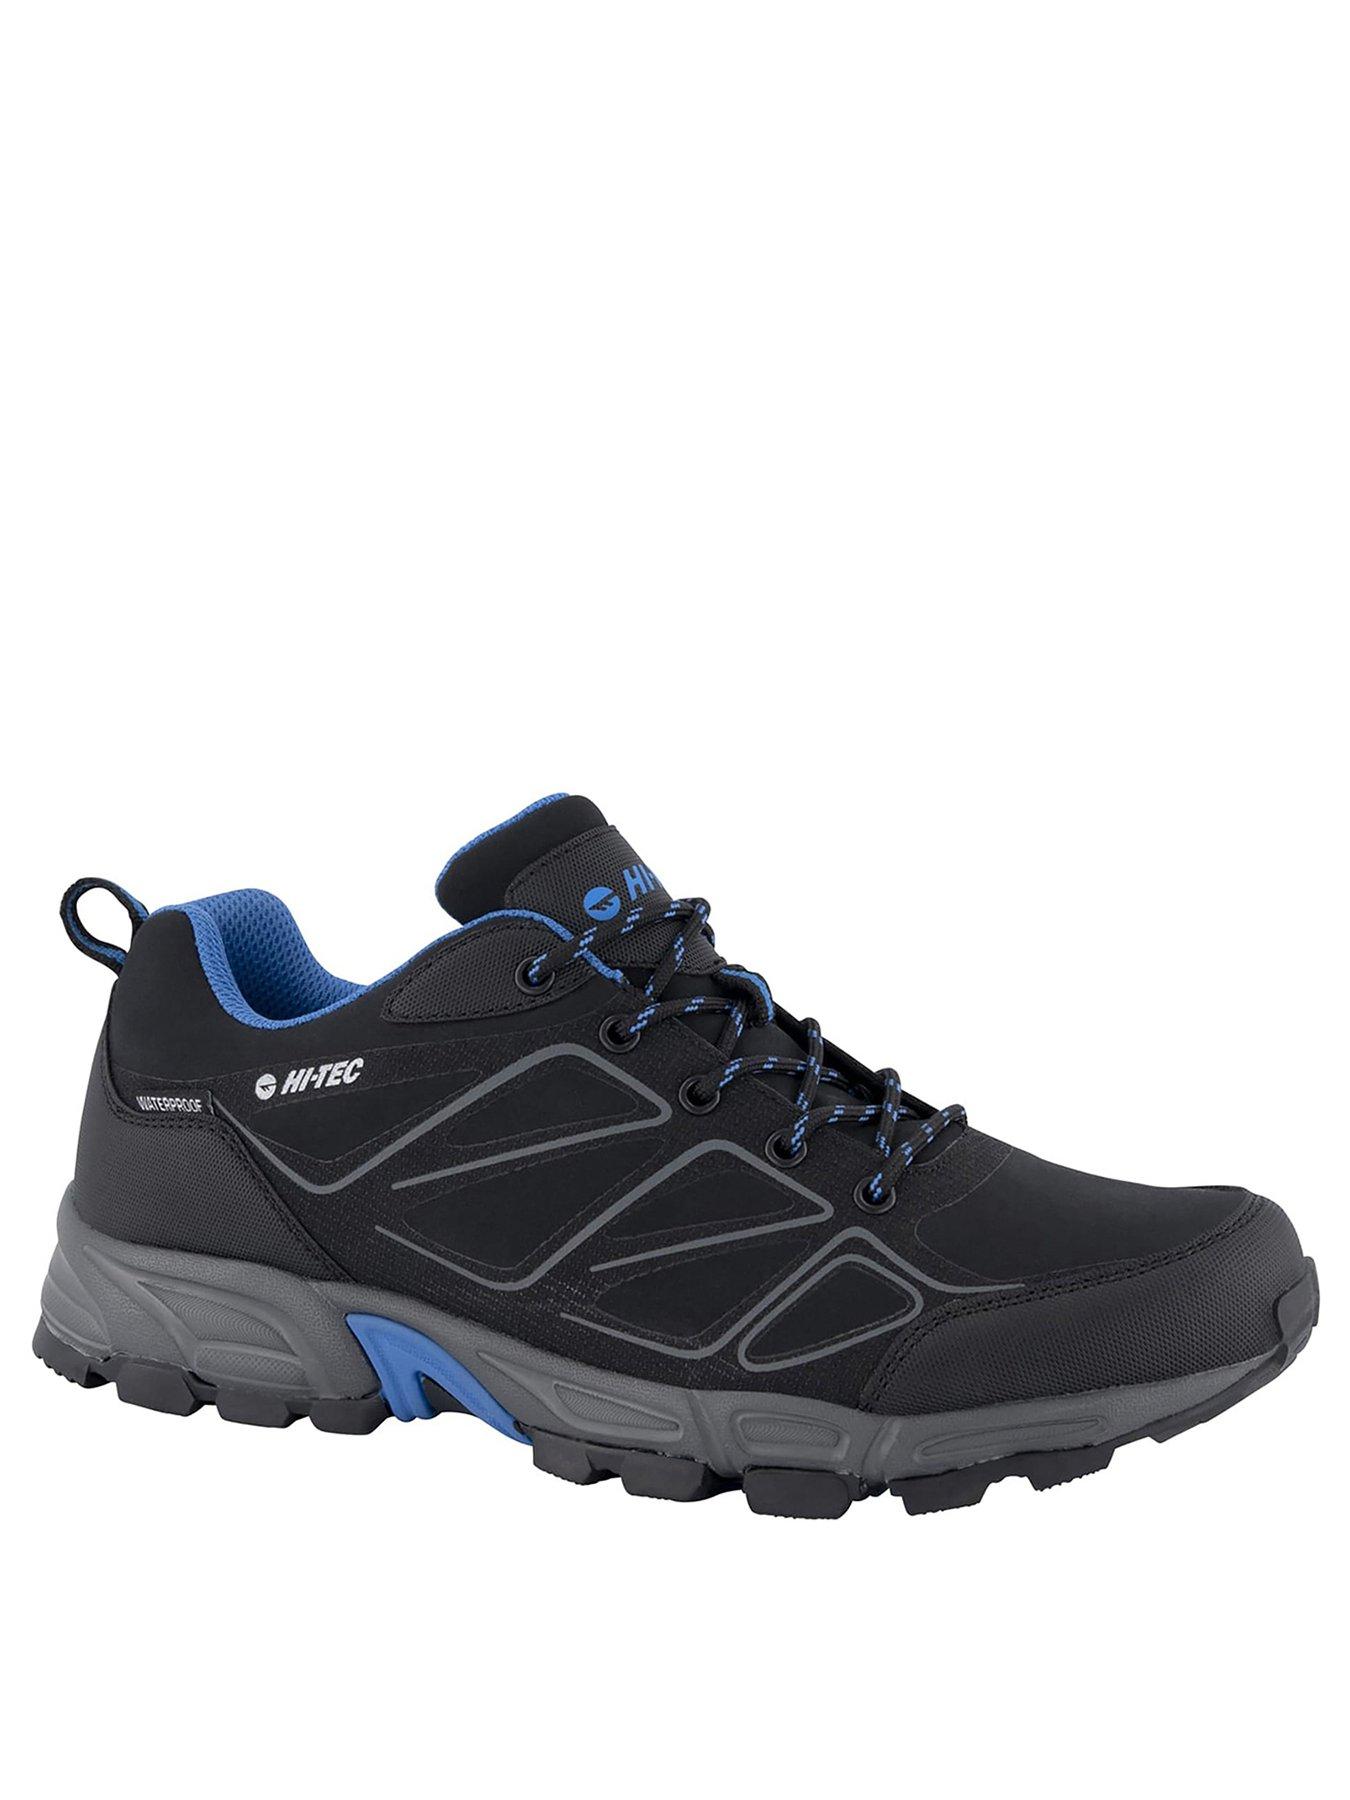  Ripper Low Waterproof Walking Shoes - Black/Blue